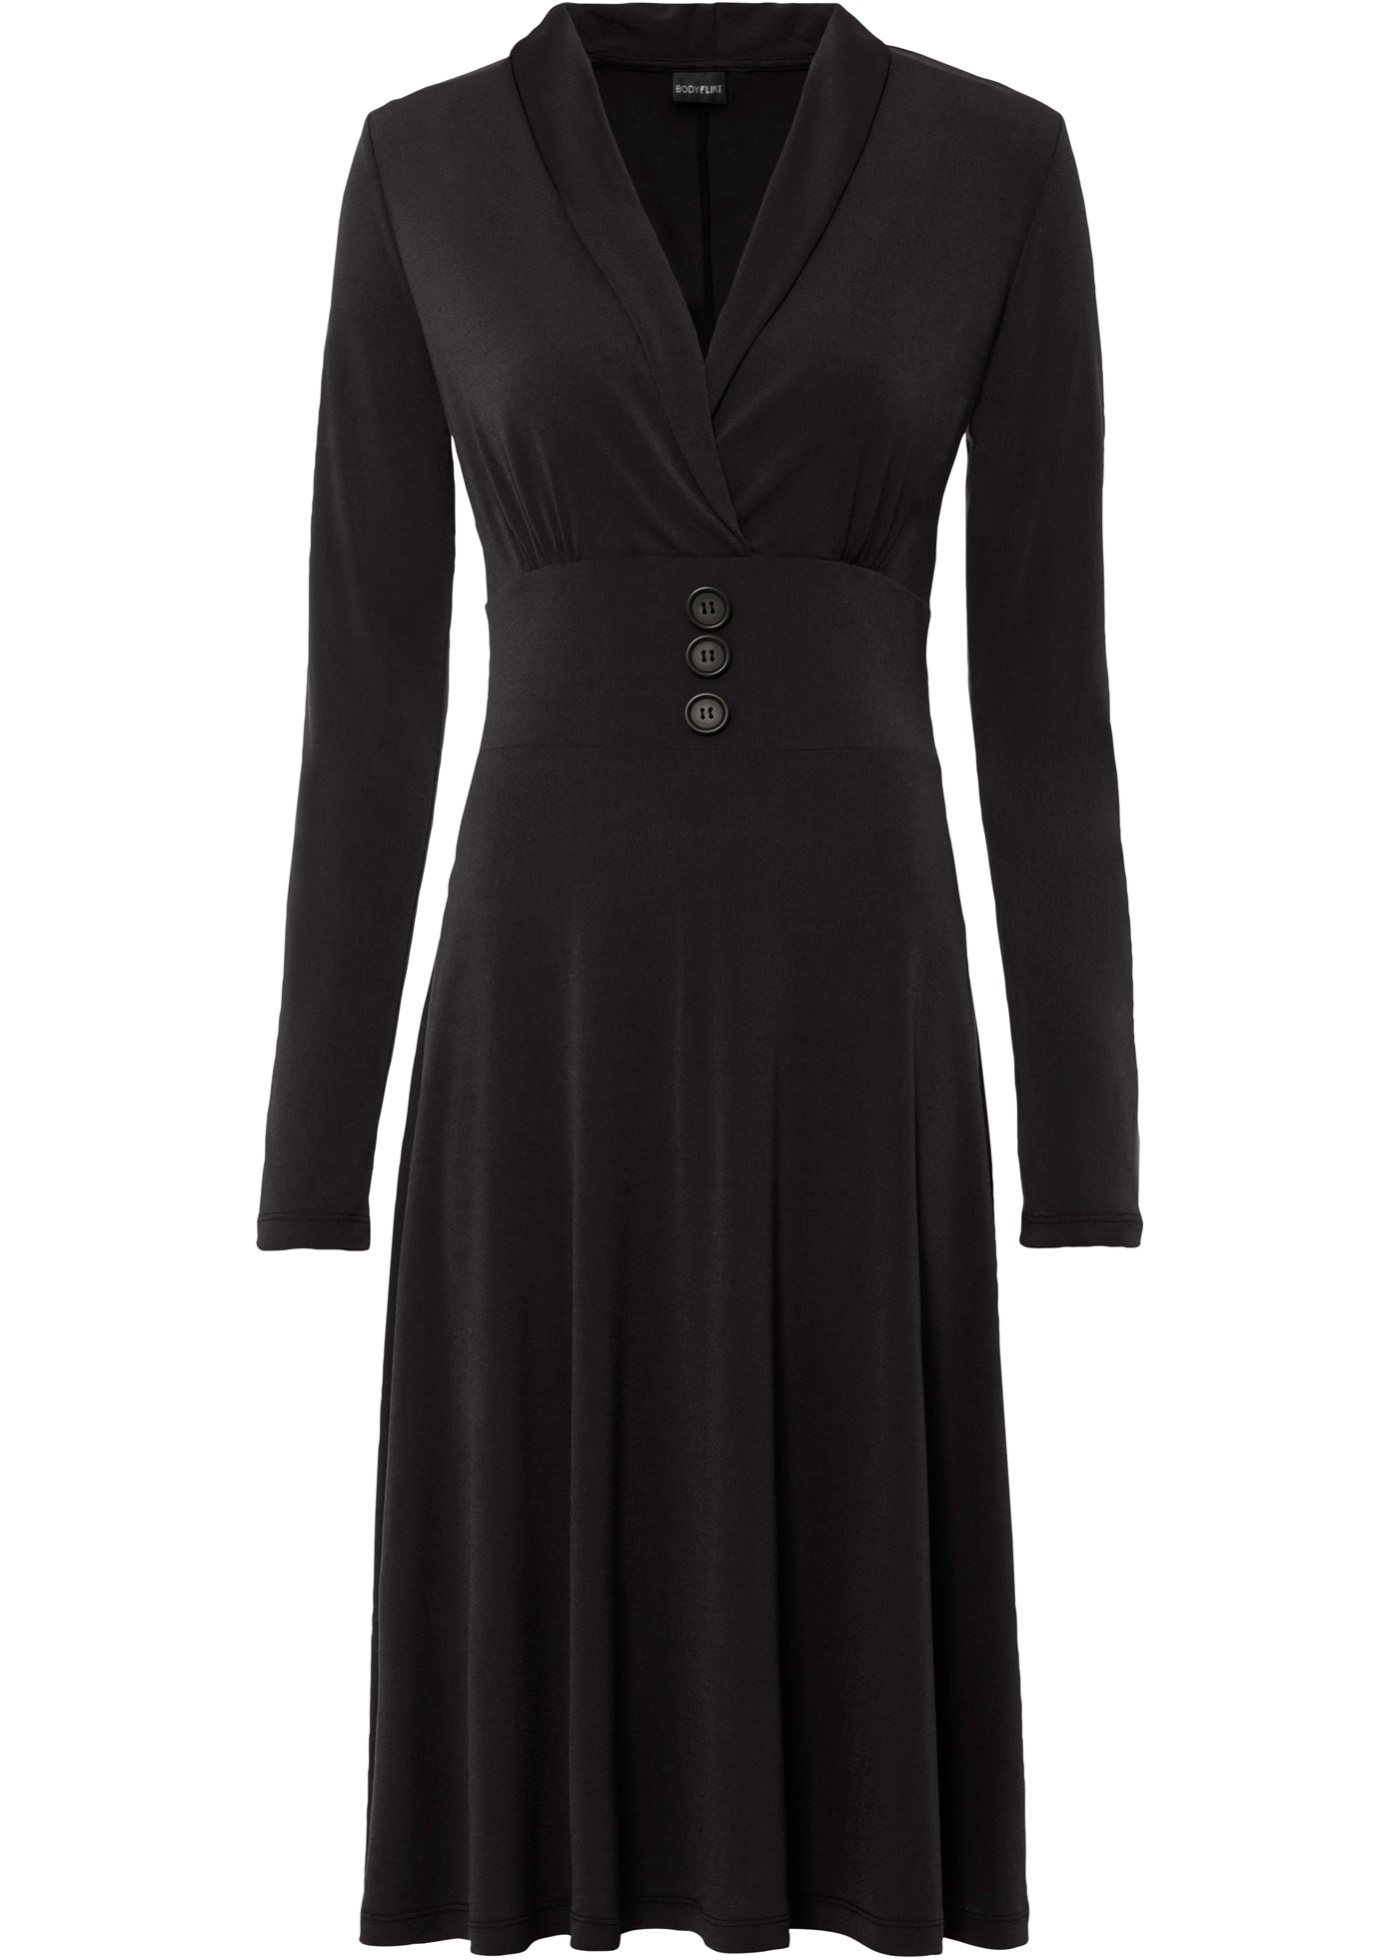 Modisches Jerseykleid mit Knöpfen verziert, das Kleid besitzt einen auffallenden Schal-Kragen. (91896395) in schwarz